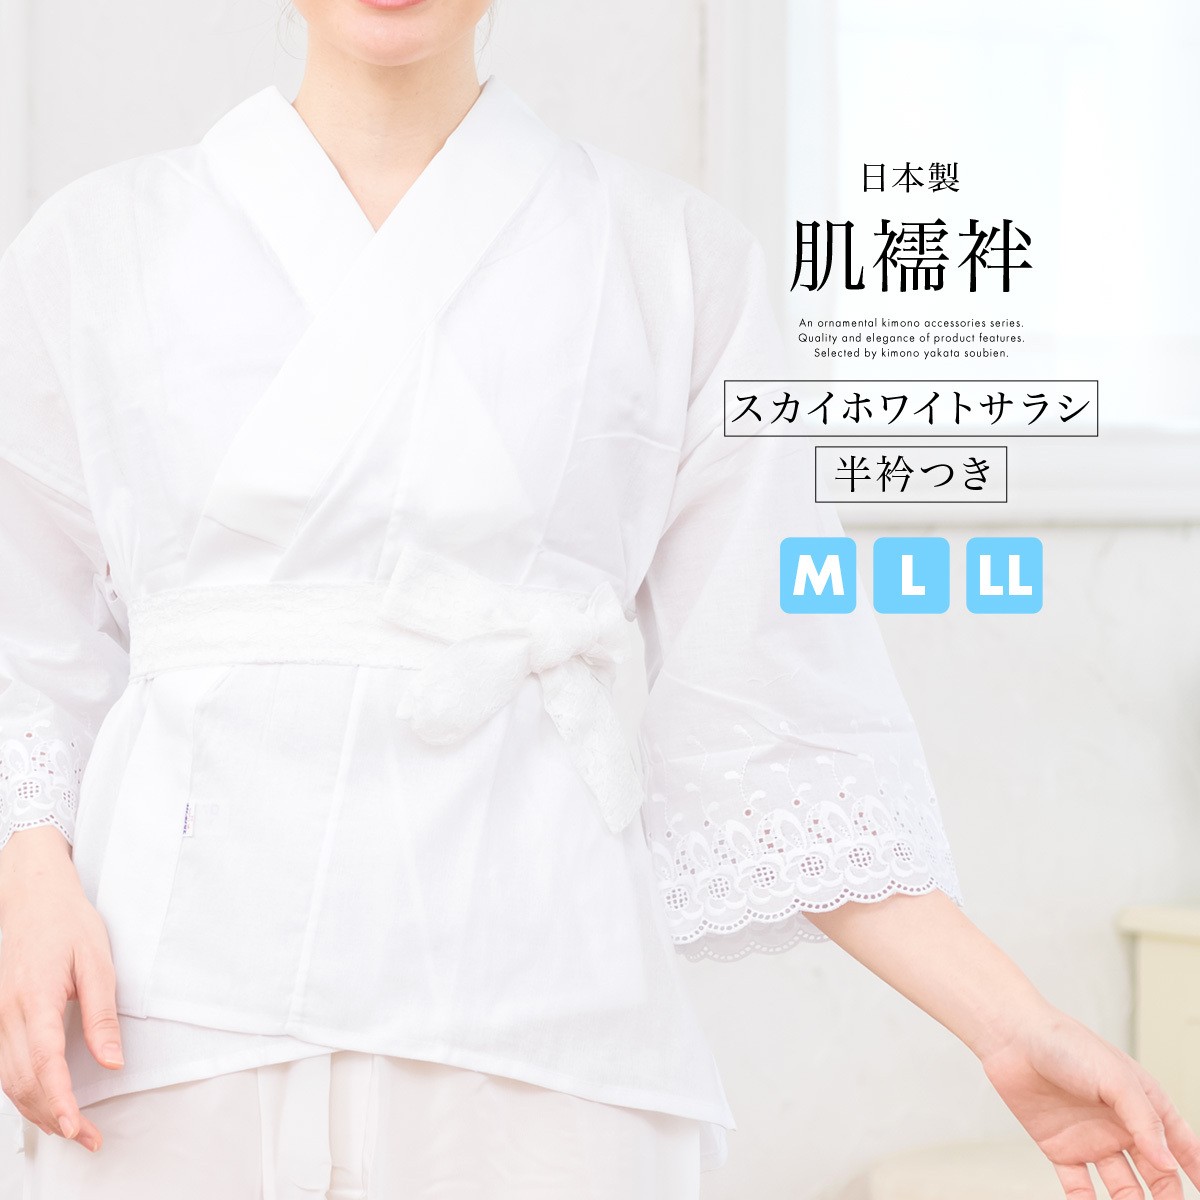 肌襦袢 女性用 半襦袢 筒袖 レース おくみ付き 半衿付き 白 綿 スカイホワイトサラシ 通年 補正下着 和装小物 日本製